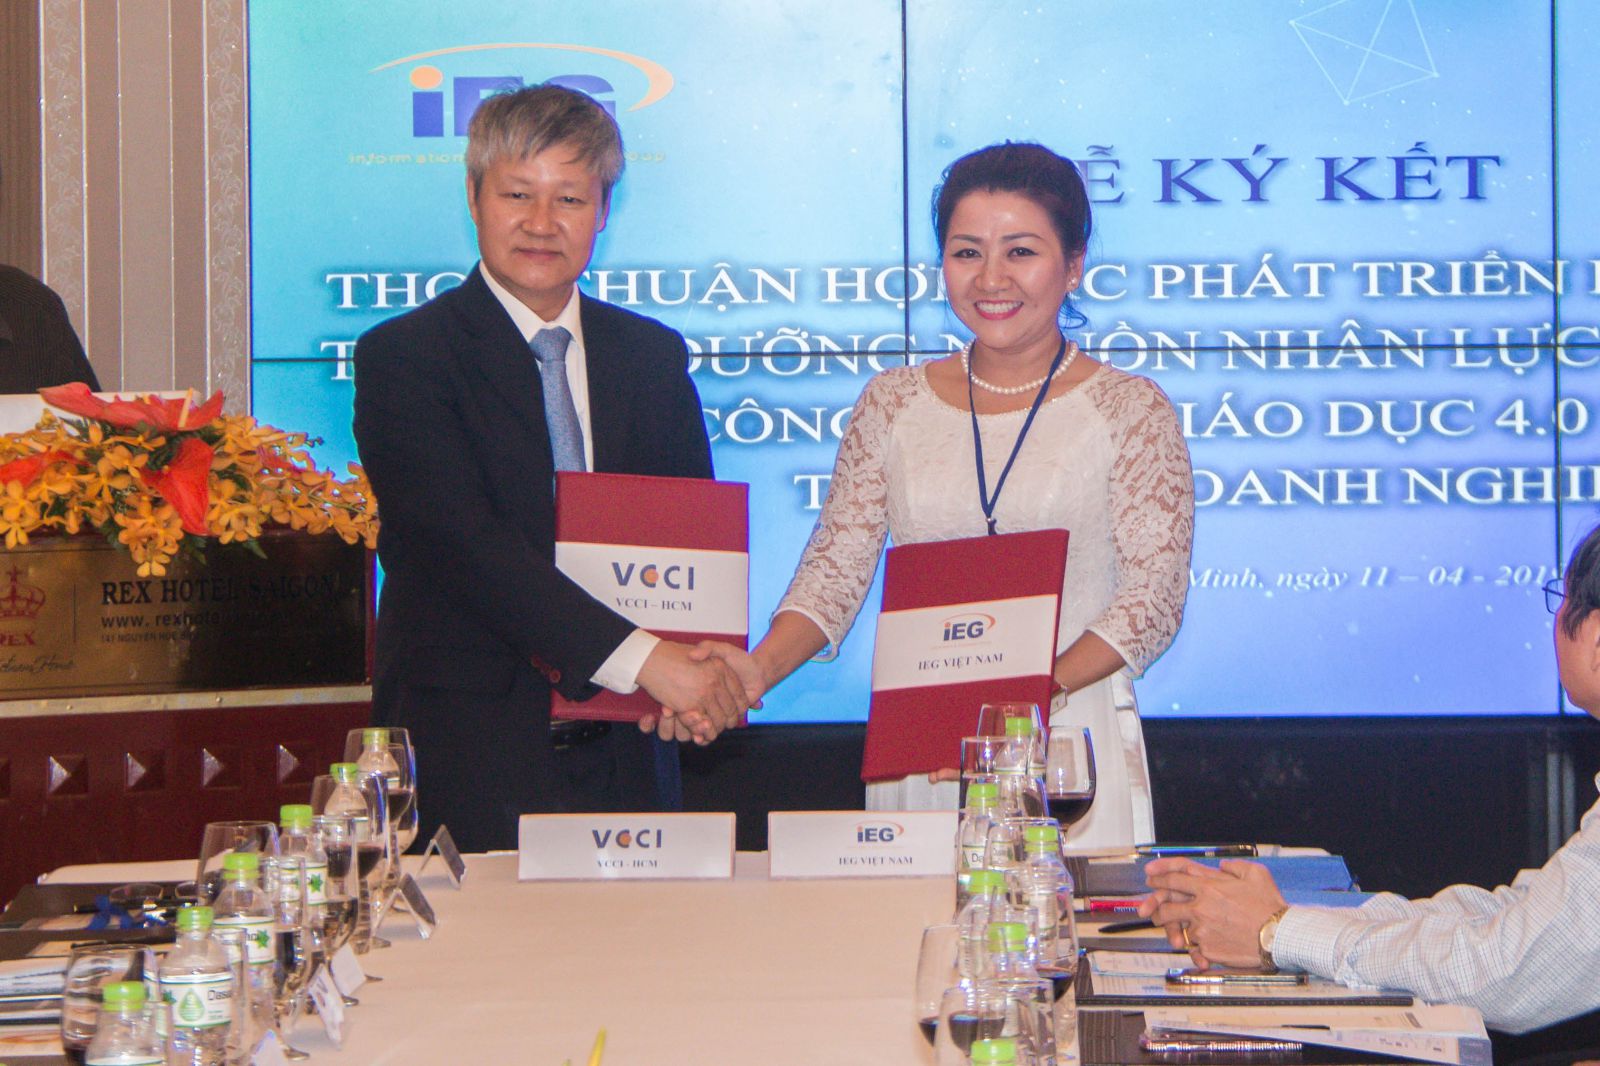 Ông Võ Tân Thành - Giám đốc VCCI-HCM ký kết thỏa thuận hợp tác với bà Phạm Thị Diễm - Tổng giám đốc IEG, đại diện chính thức của tập đoàn Electude có trụ sở chính tại Hà Lan